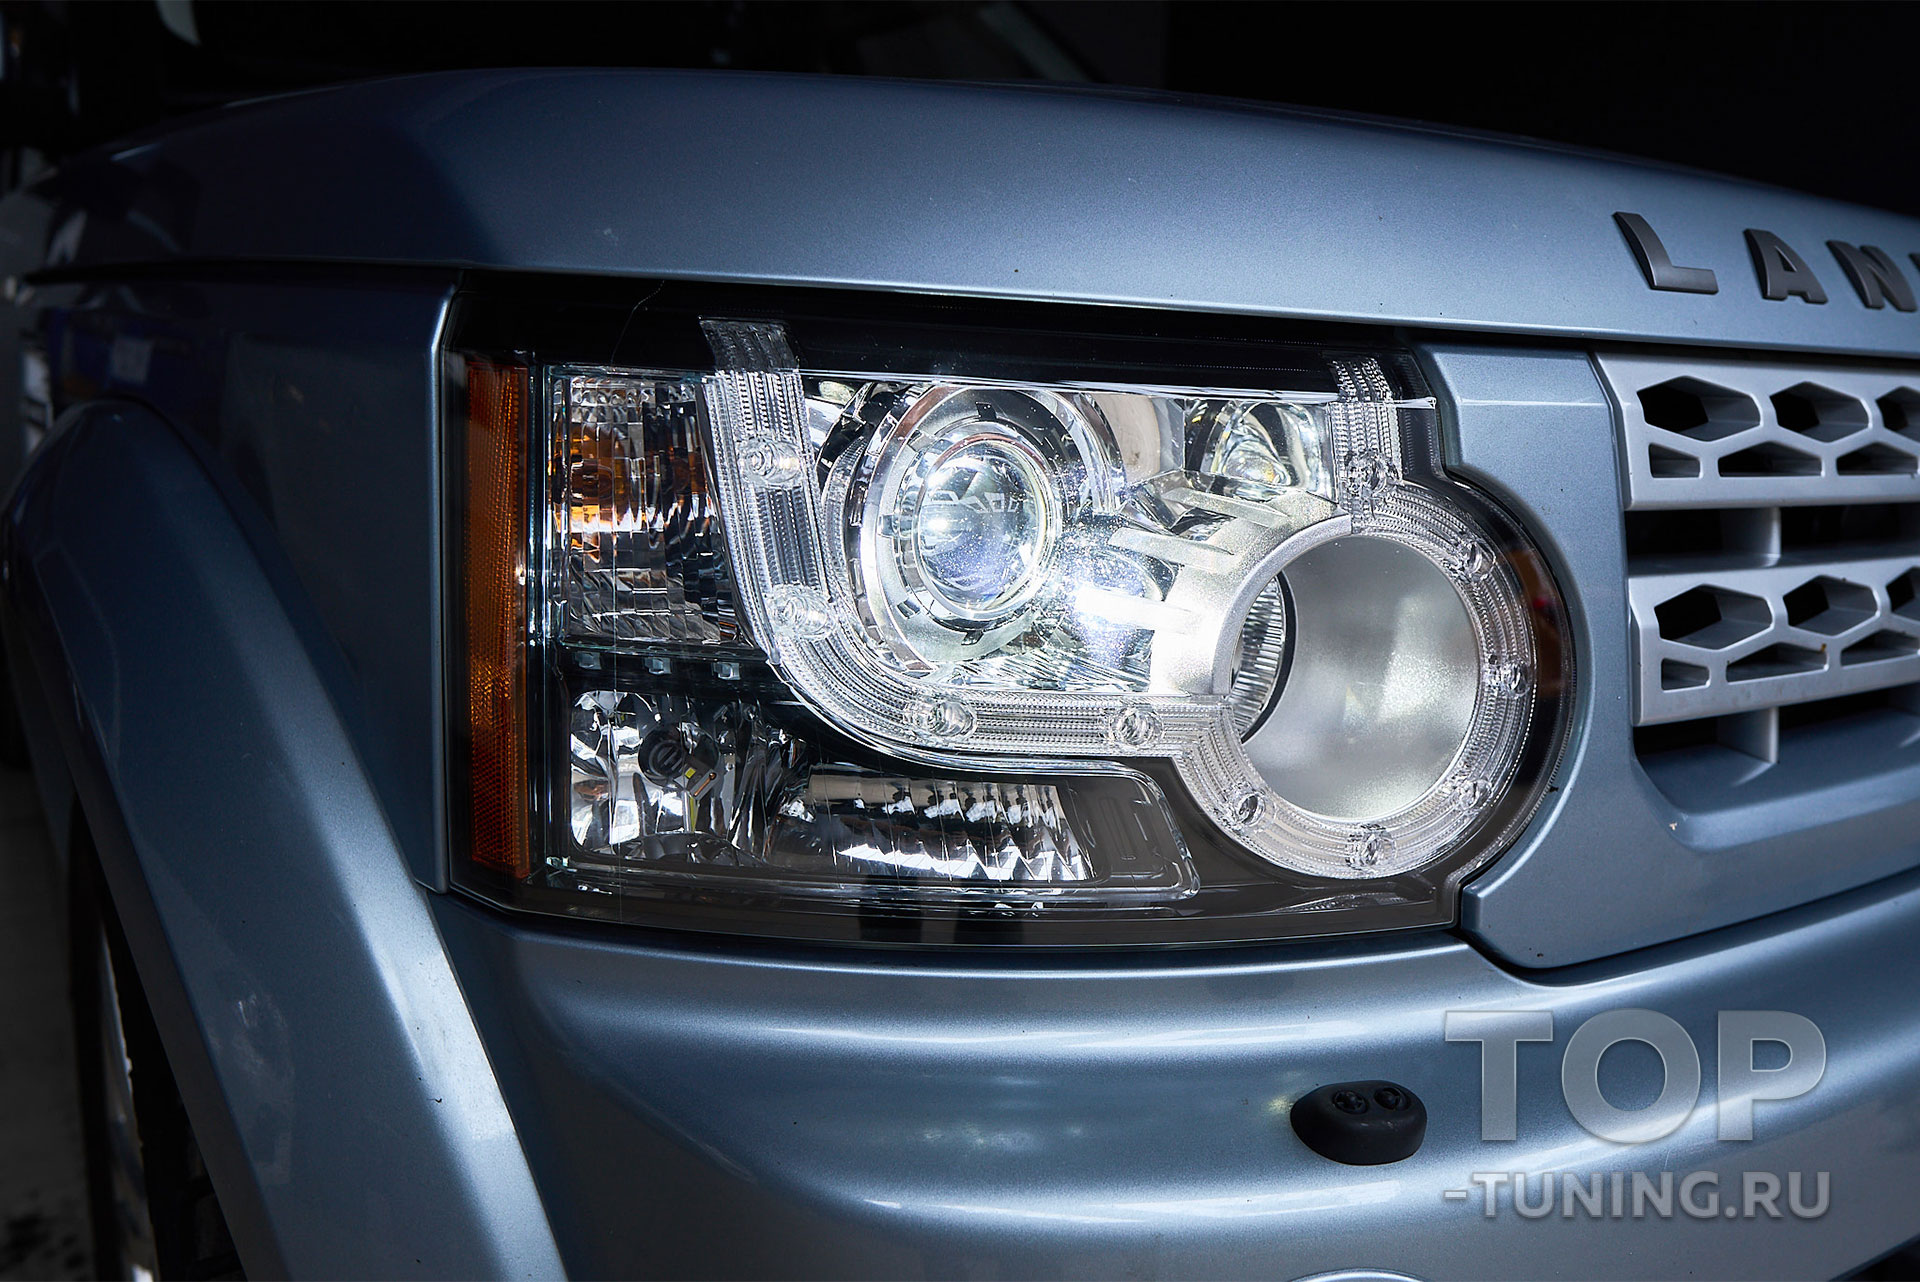 Тюнинг фар Land Rover Discovery 4